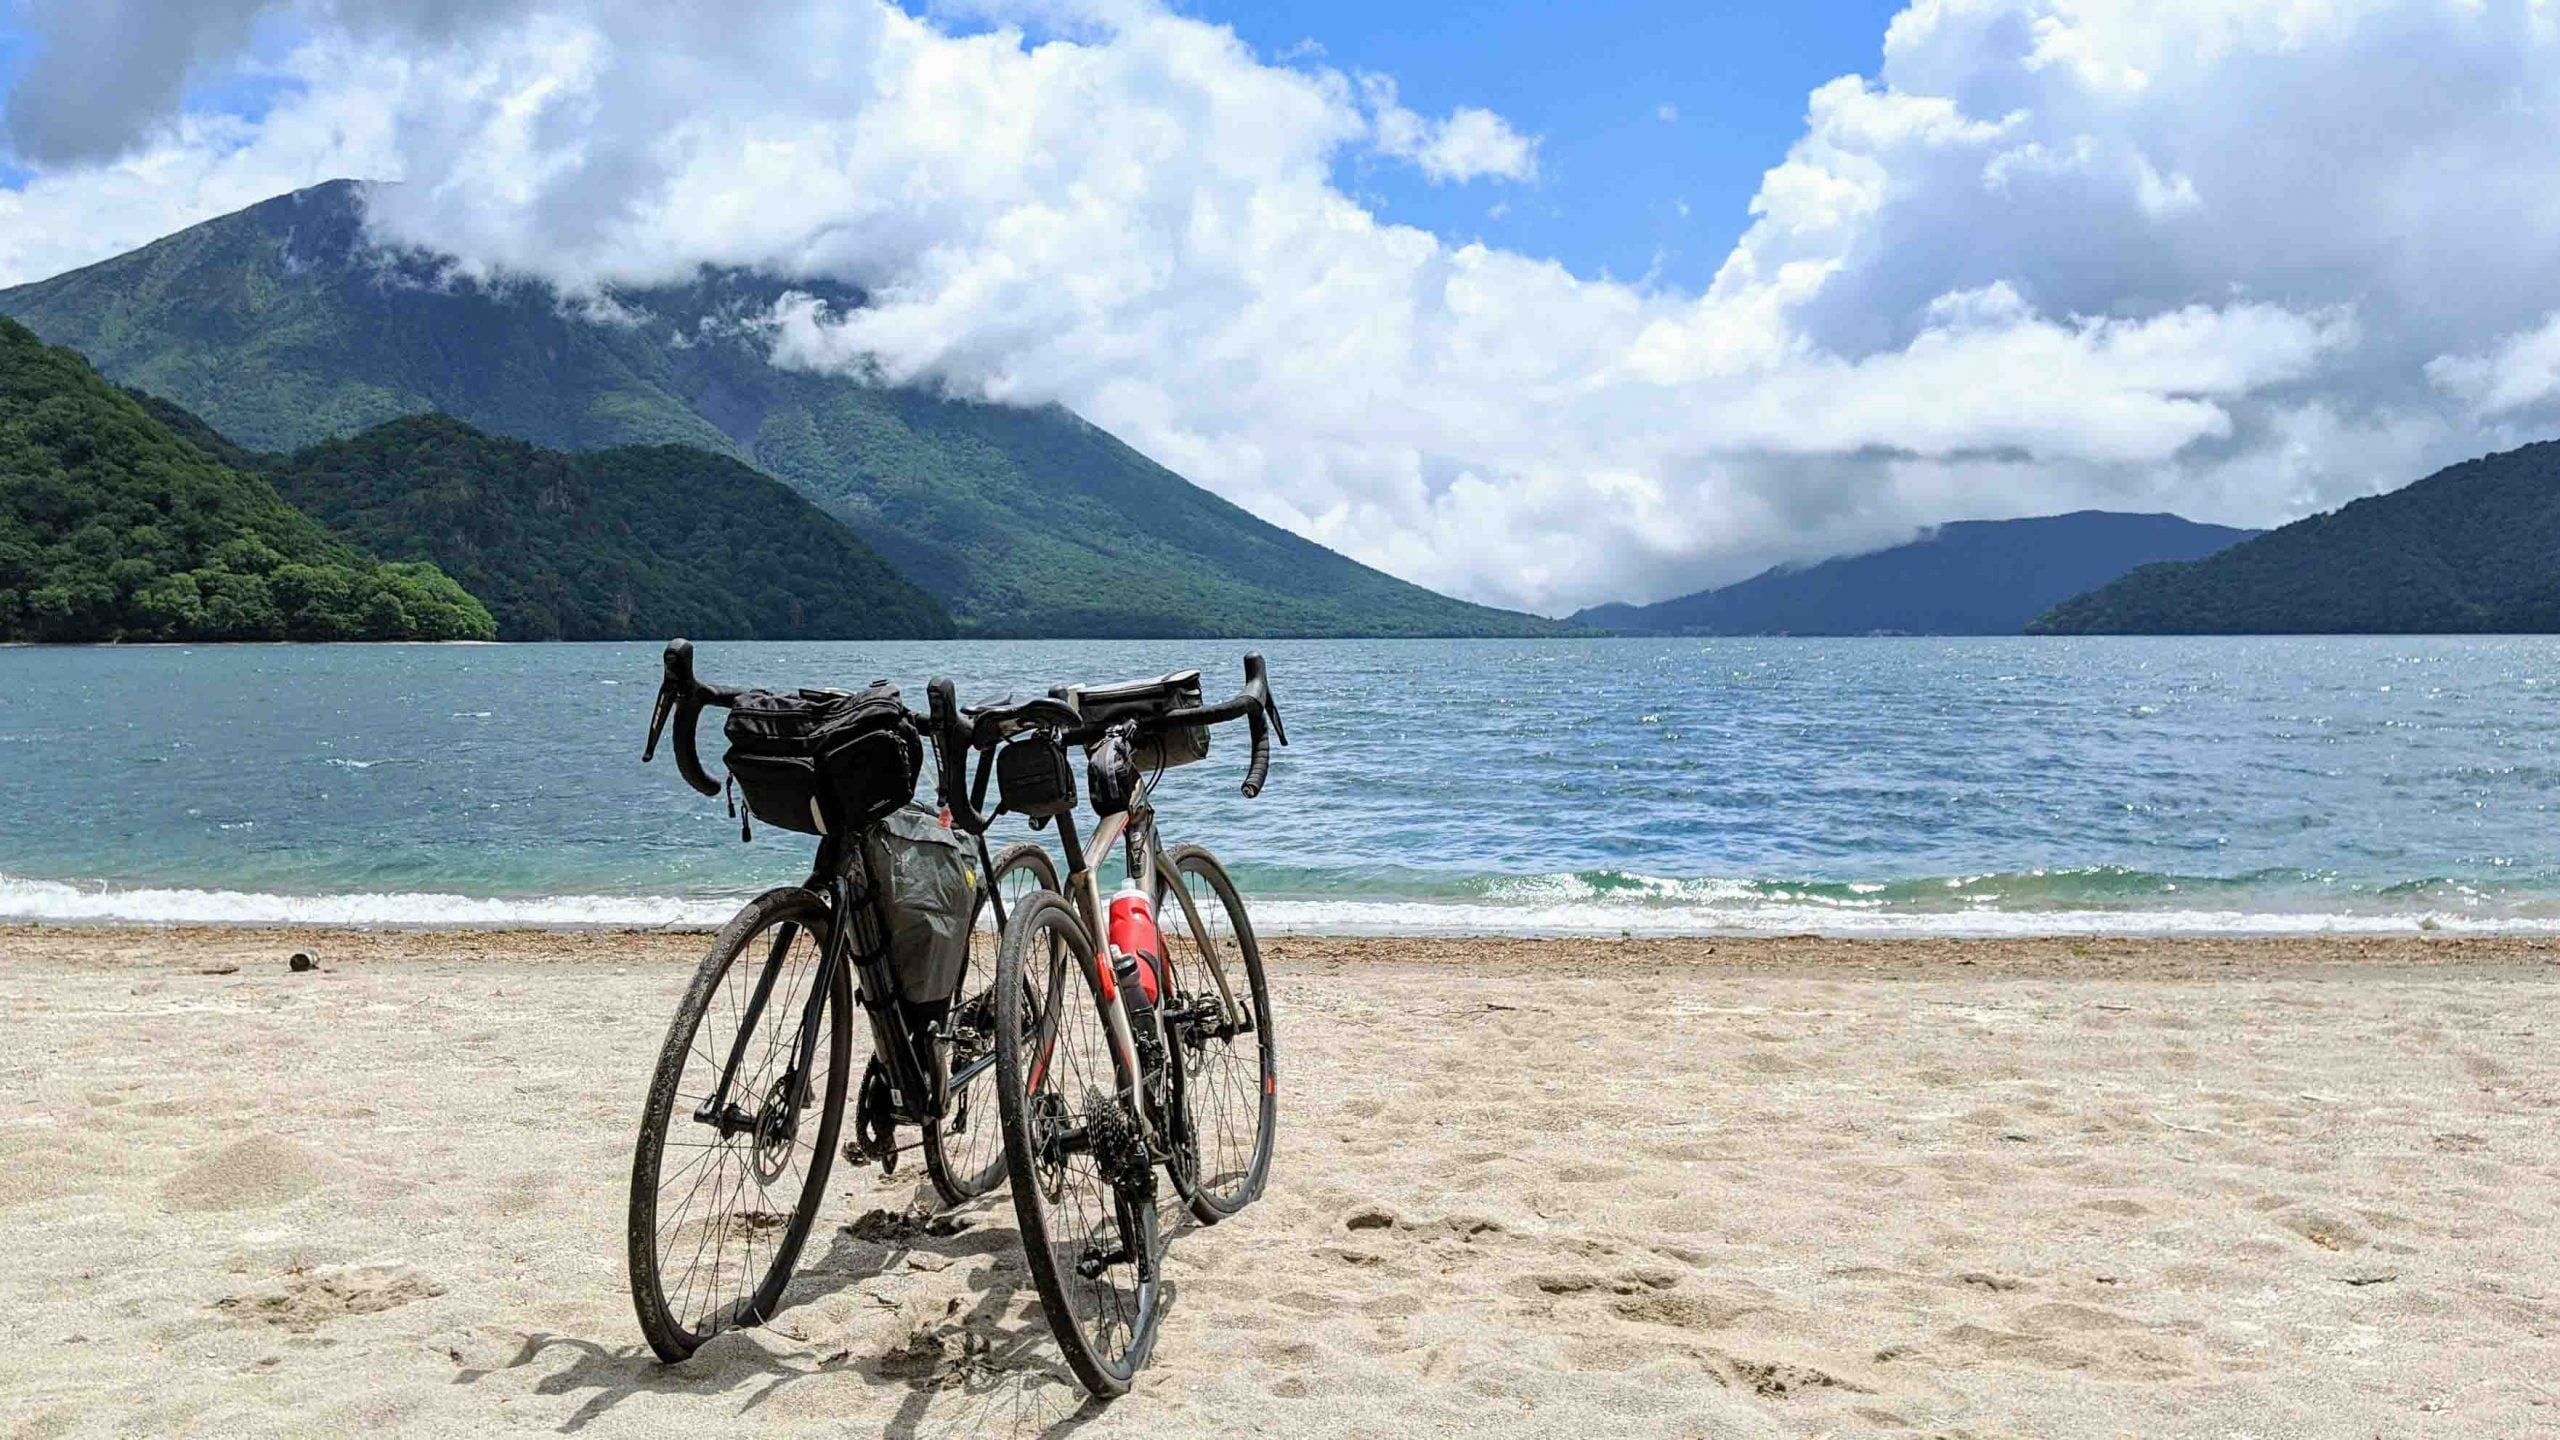 Bikes by a beach in Japan